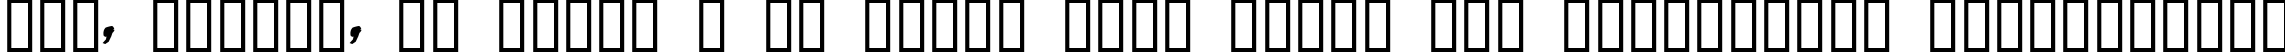 Пример написания шрифтом Daft Font текста на украинском